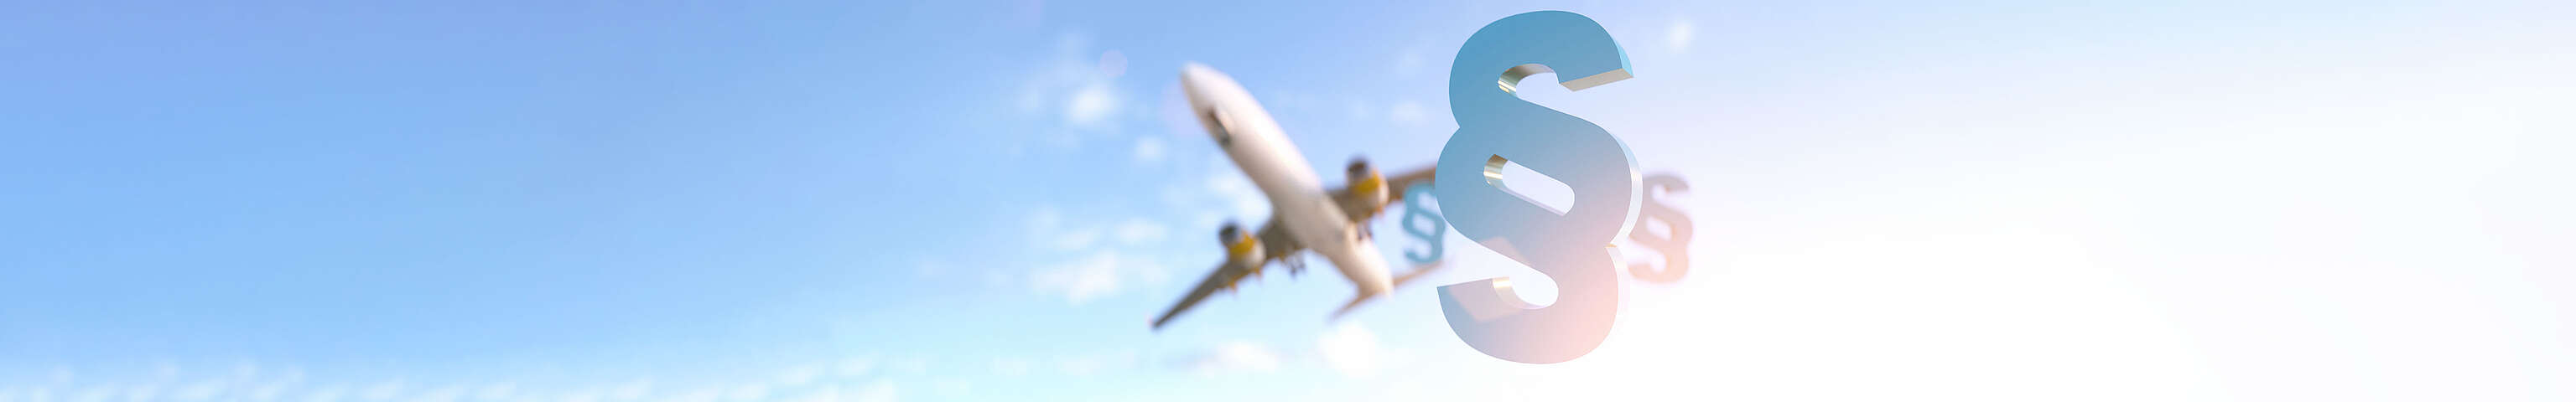 Ein Paragraphen-Symbol ist im Vordergrund, im Hintergrund fliegt ein Flugzeug